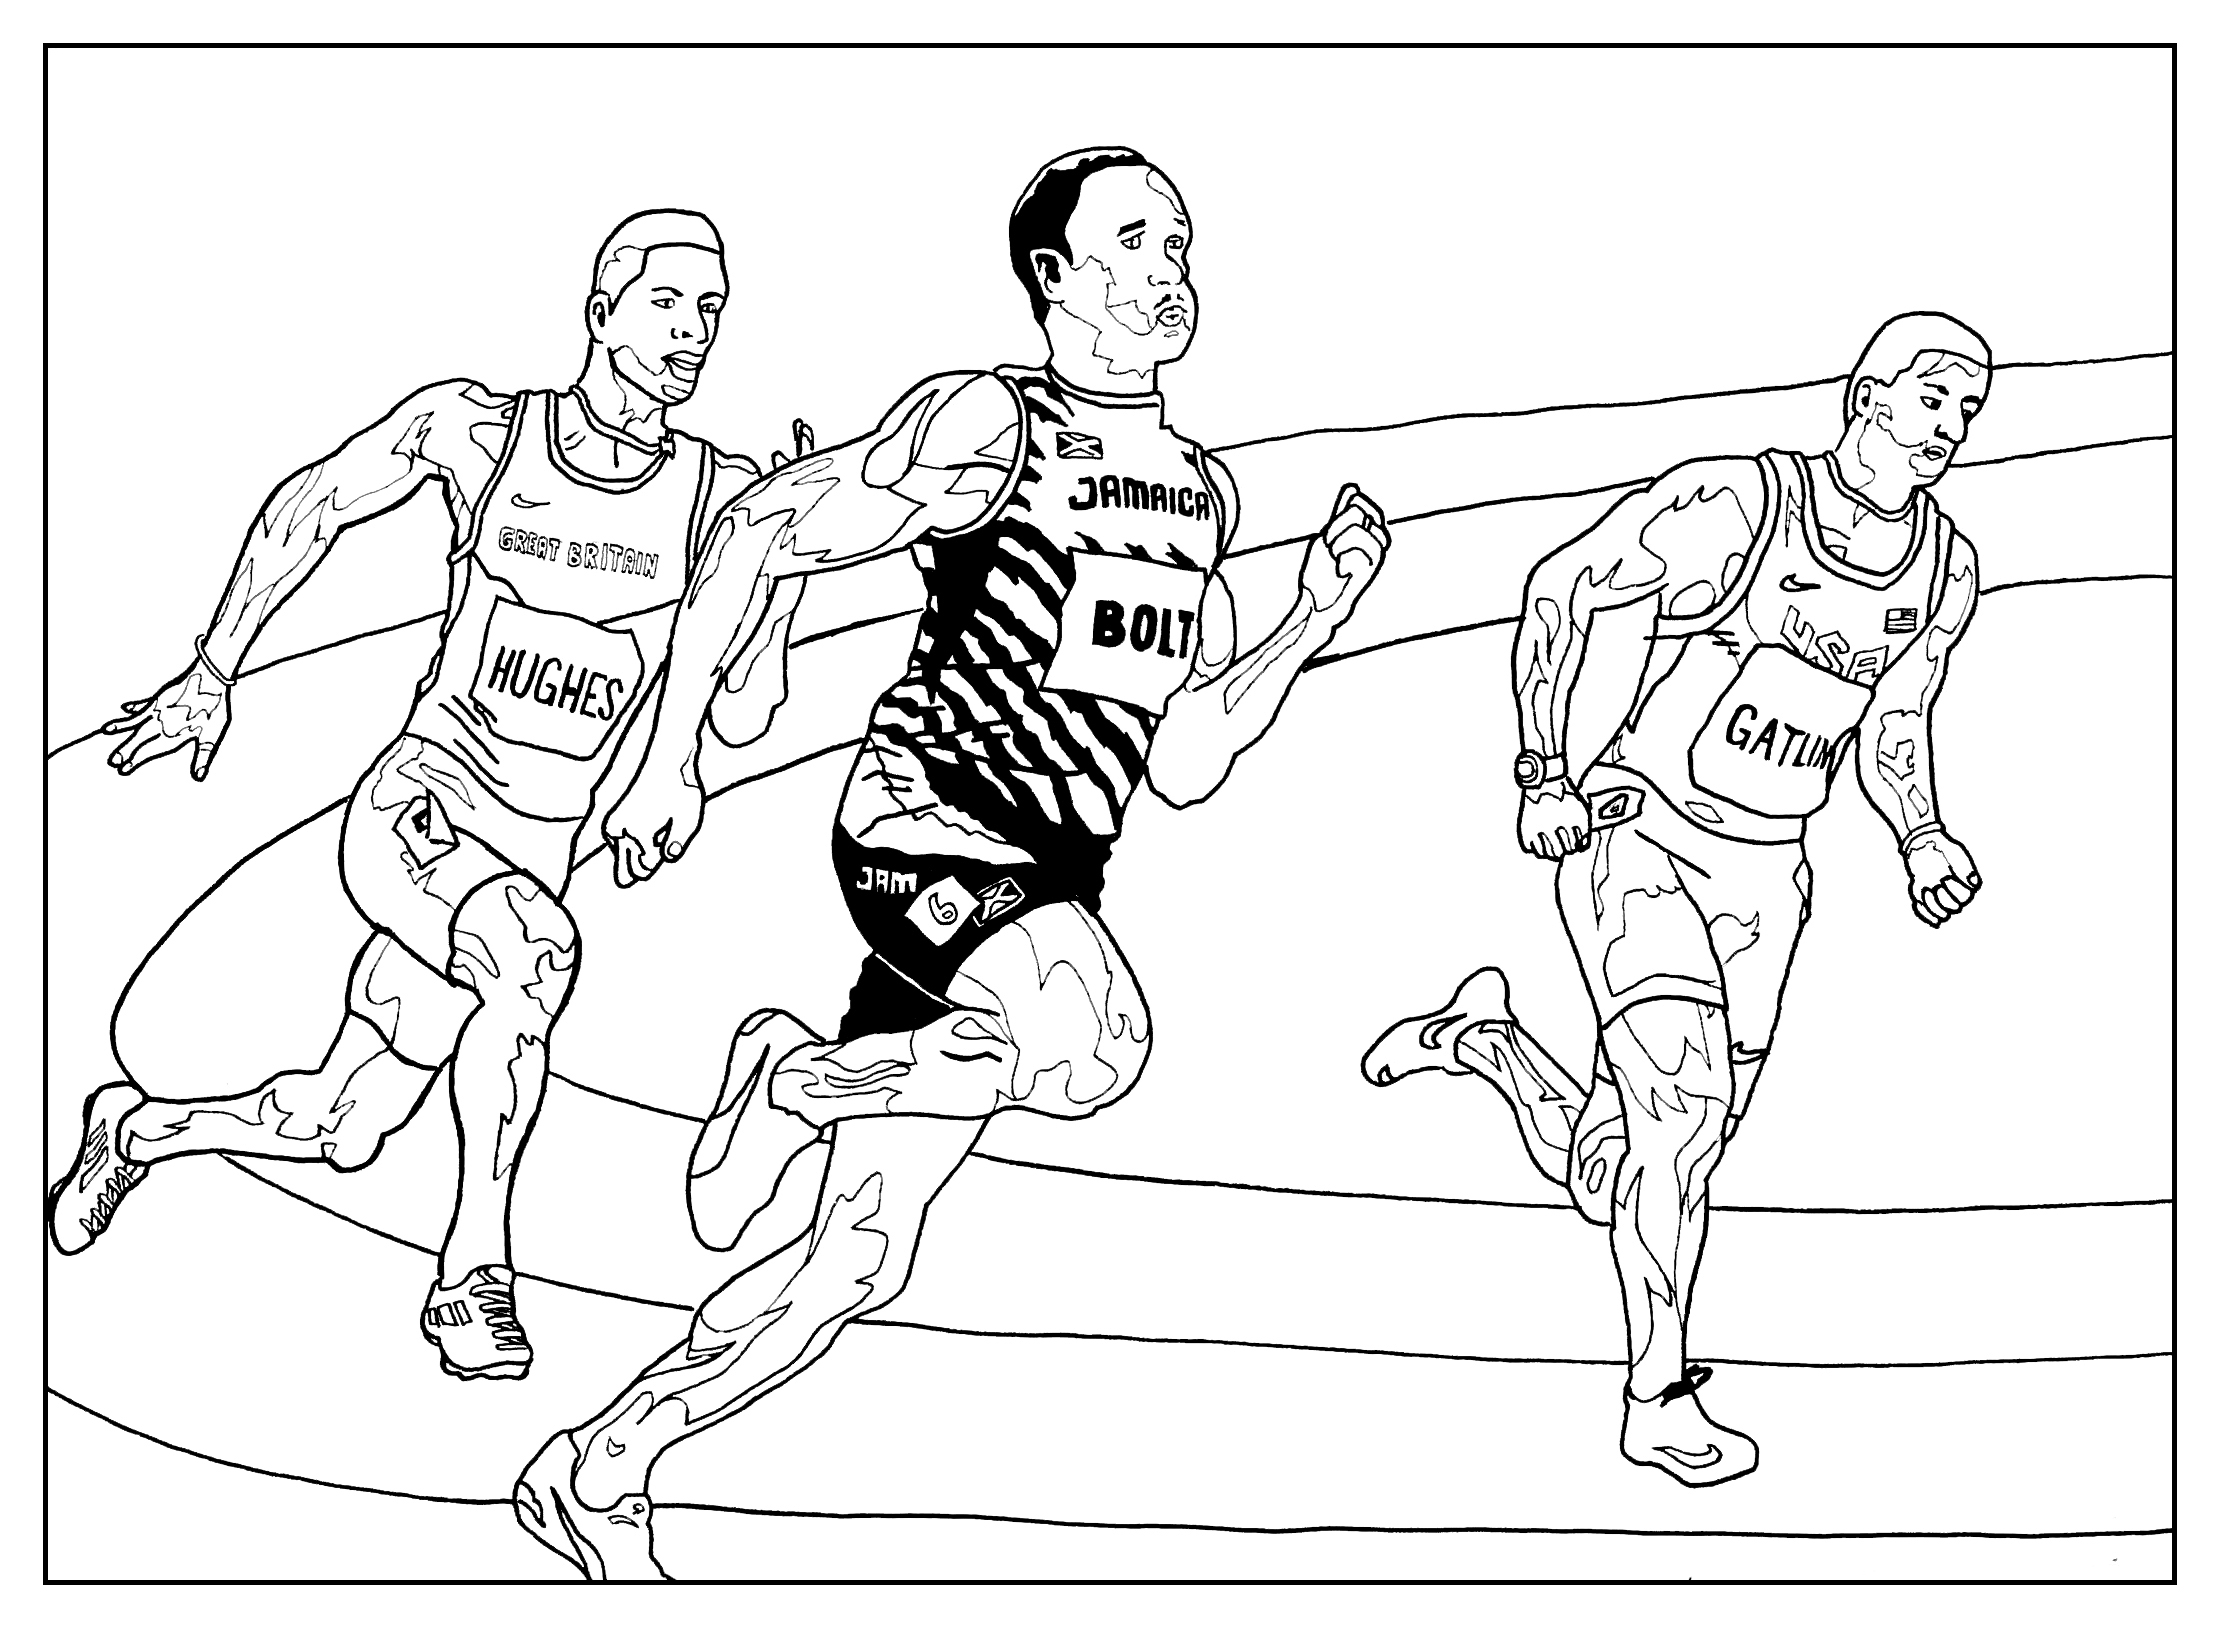 Colorear sobre el tema del atletismo (correr)